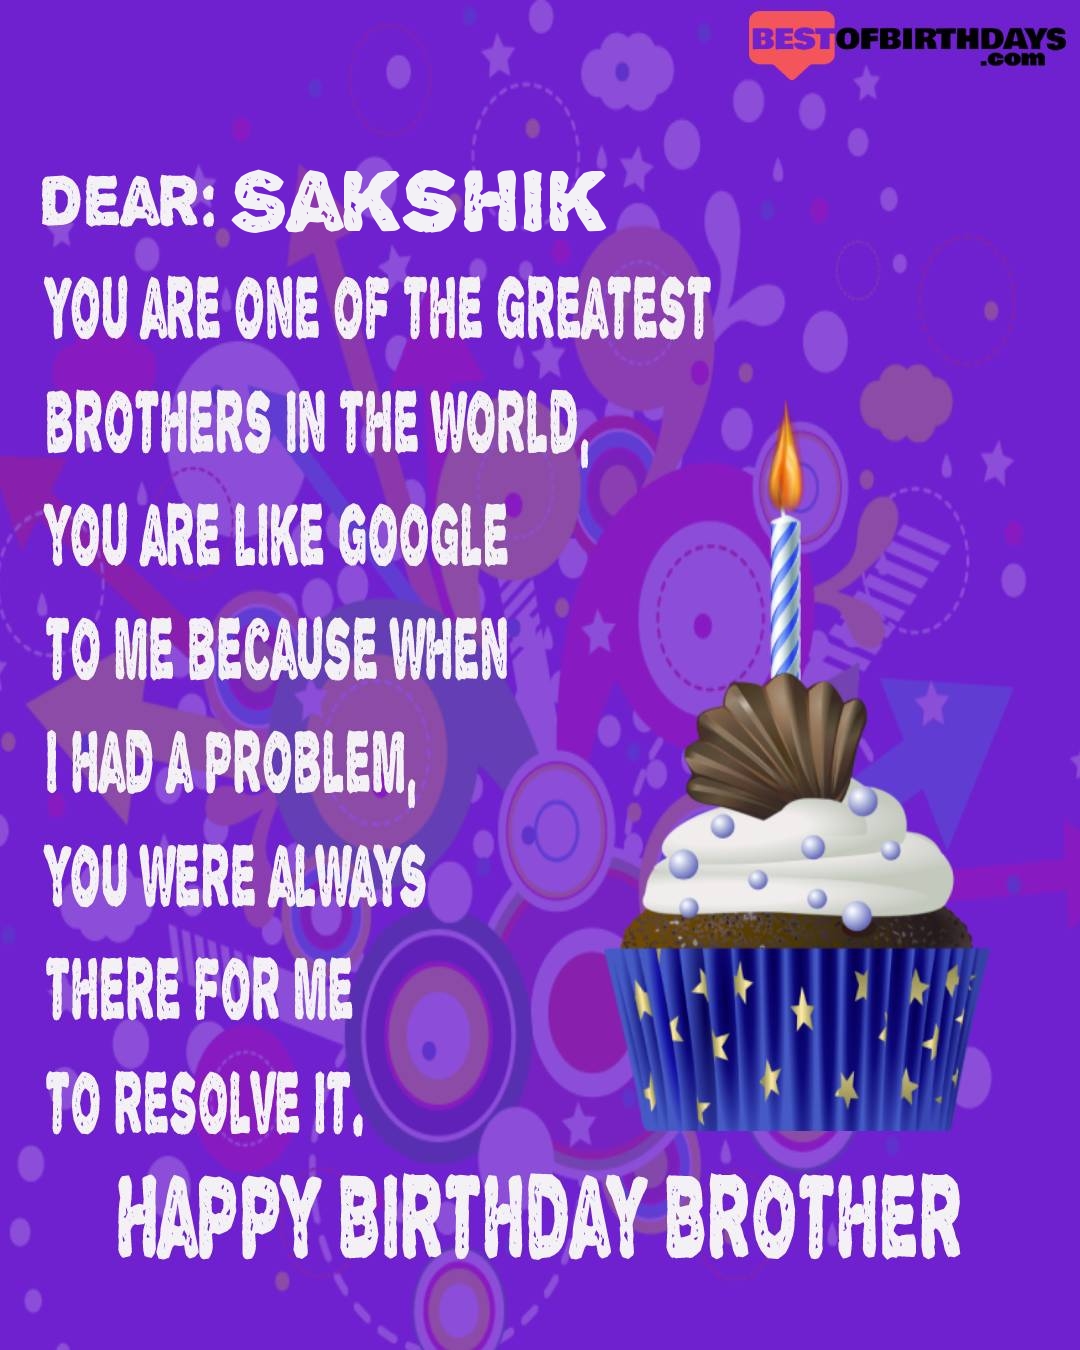 Happy birthday sakshik bhai brother bro